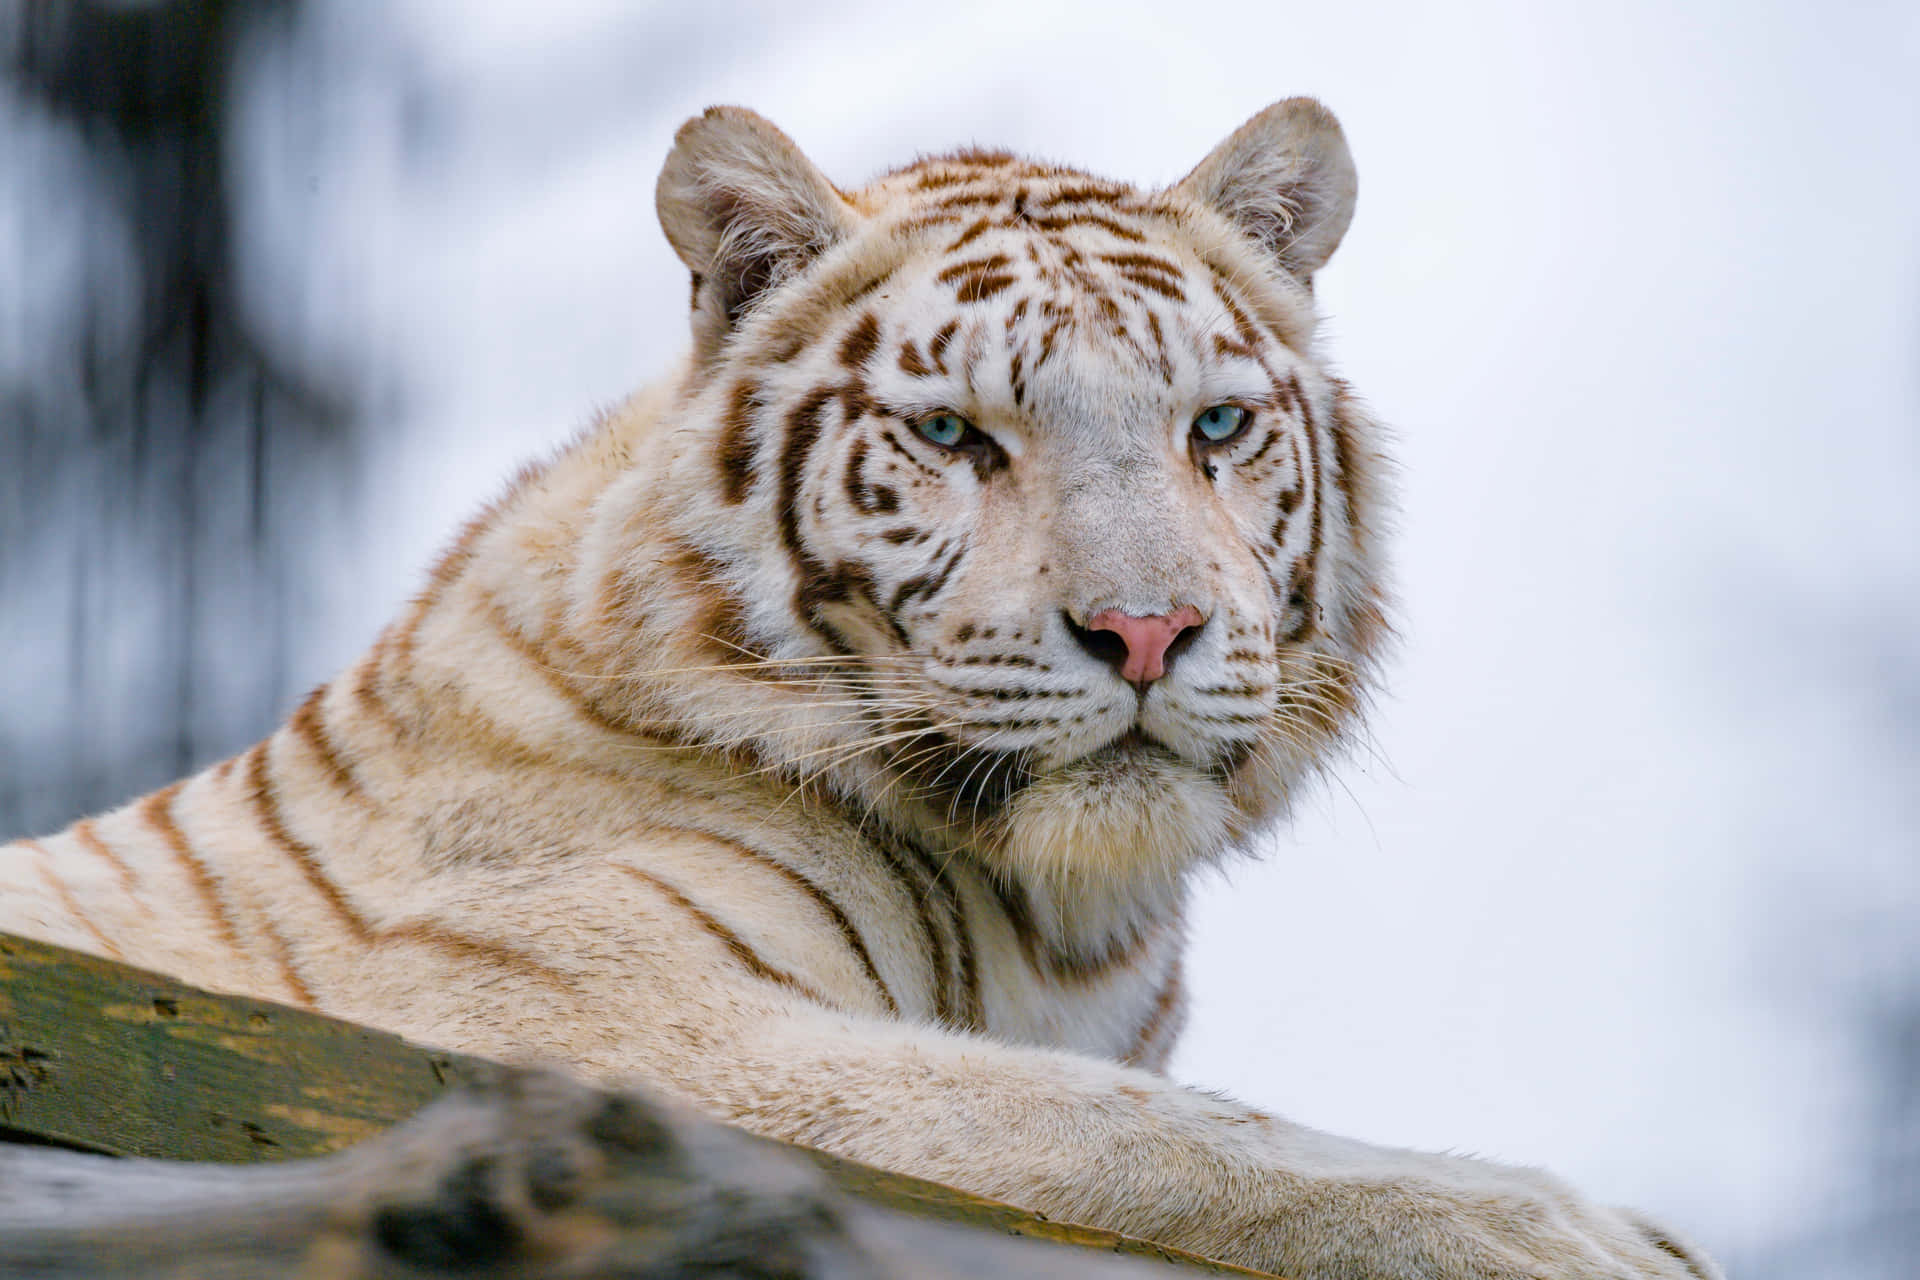 Majestic White Tiger